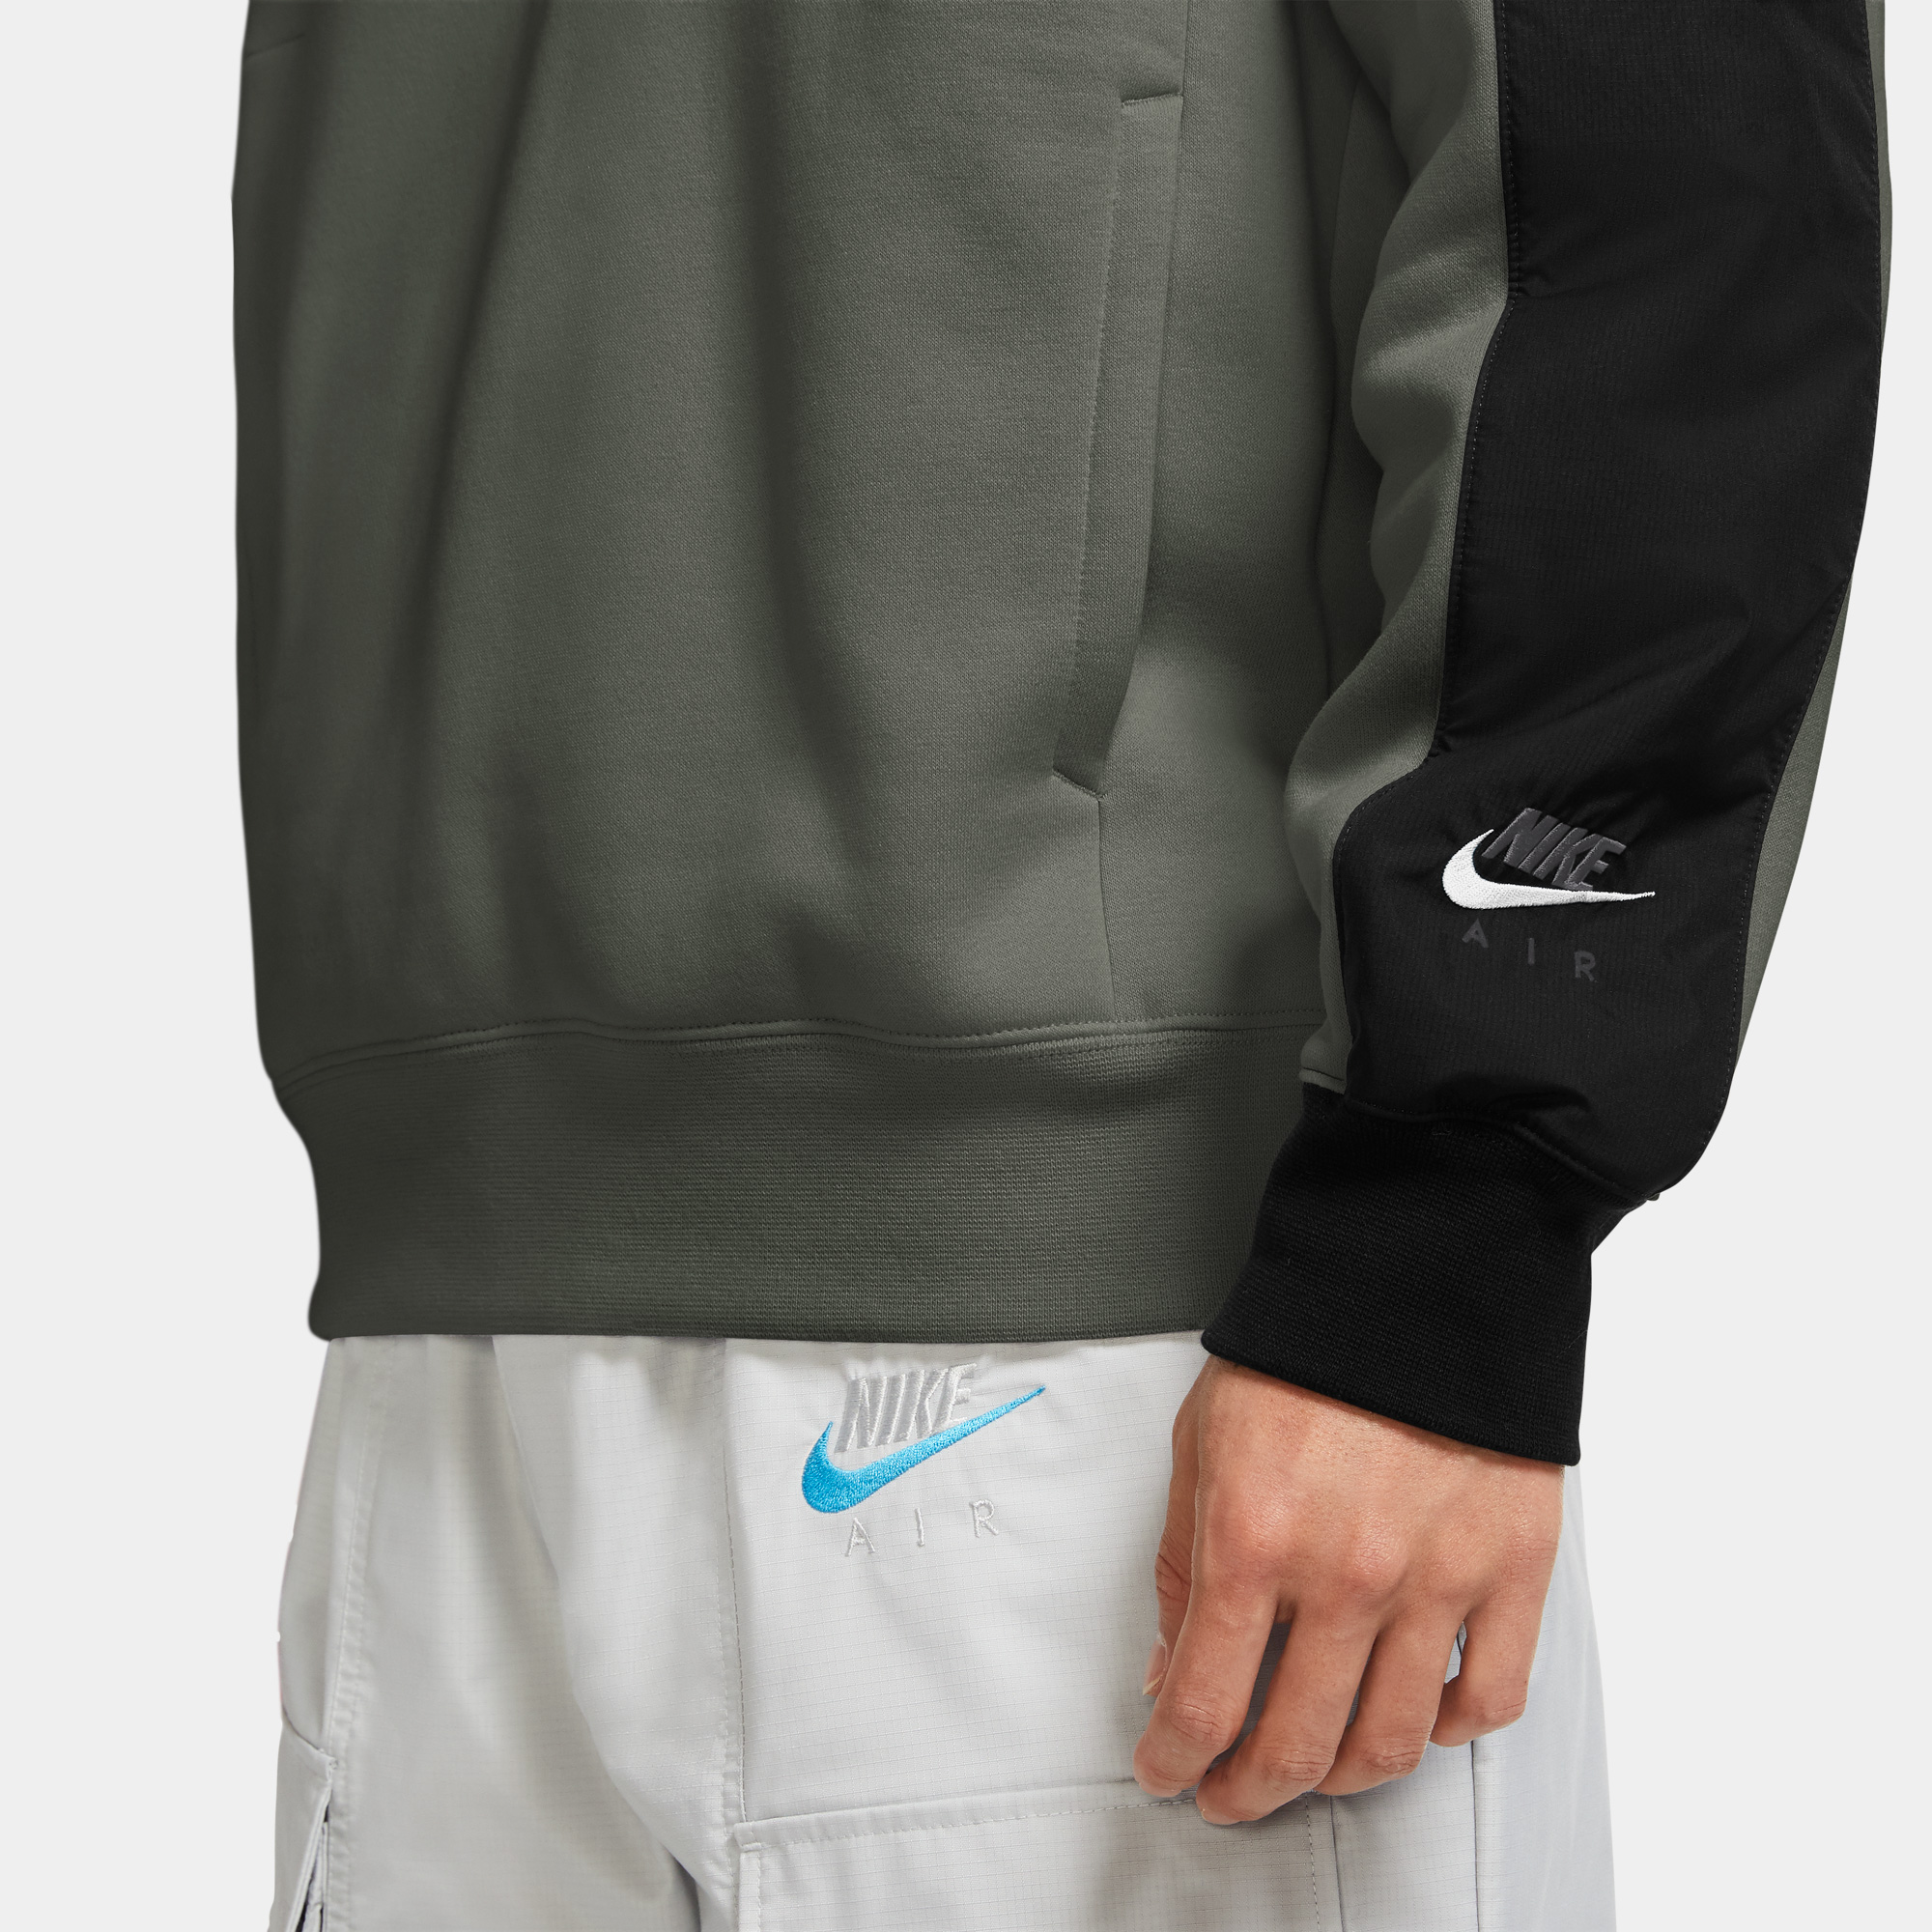 Nike Air Erkek Yeşil Kapüşonlu Sweatshirt